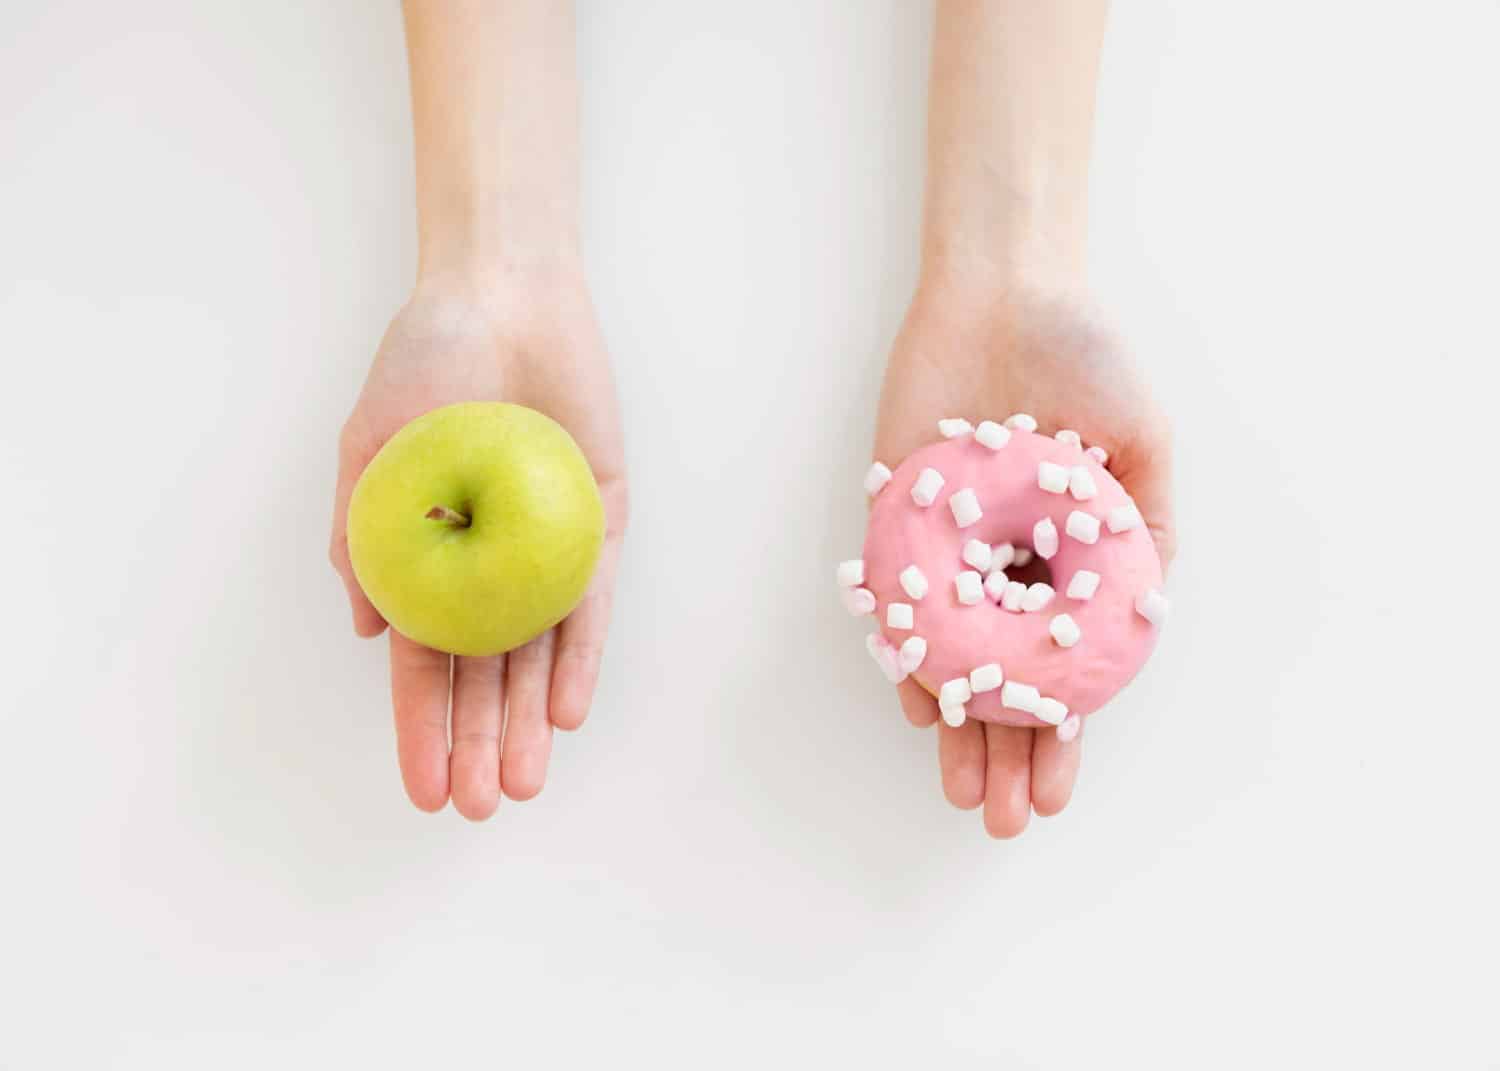 Φωτογραφία με μια γυναίκα να κρατάει μήλο και ντόνατς σε άρθρο για το μεταβολικό σύνδρομο